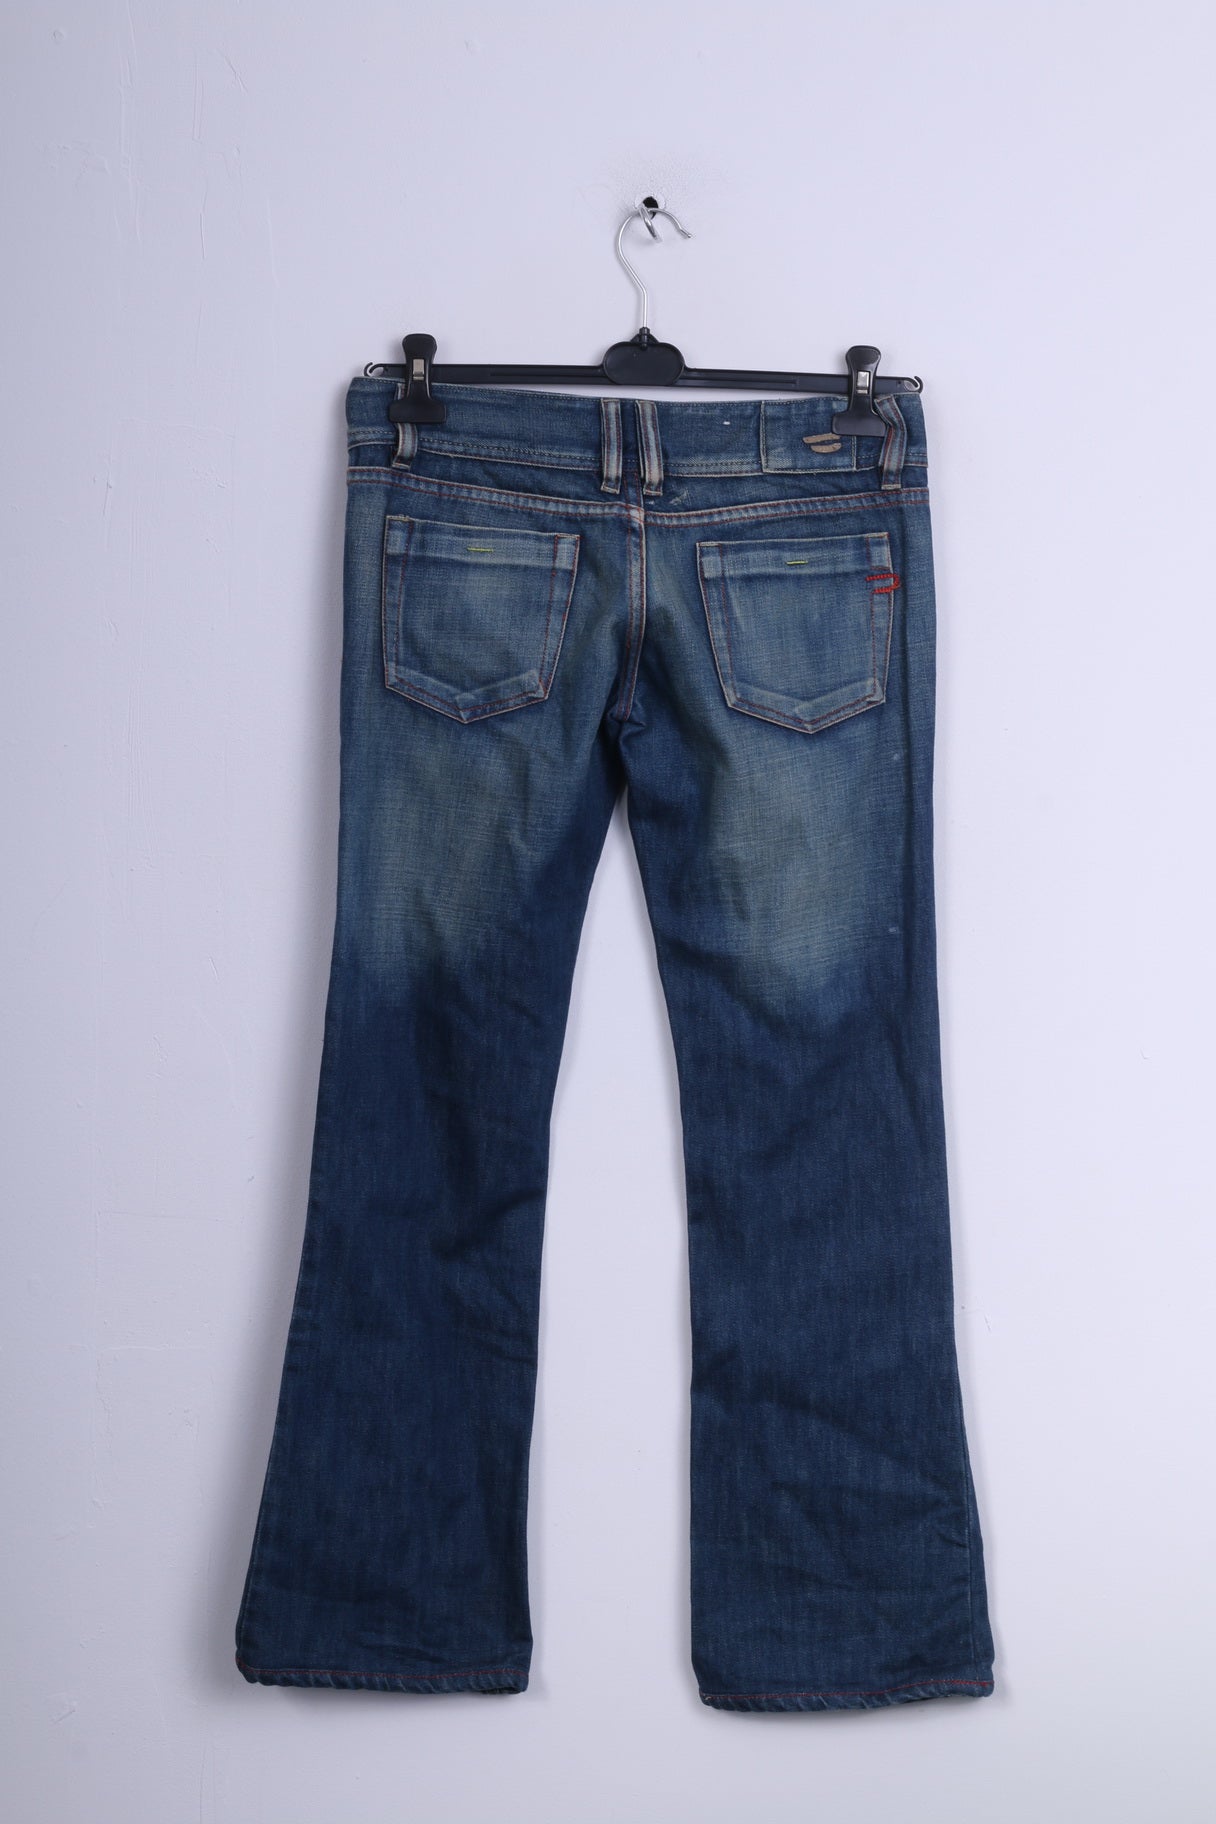 Diesel Industry Womens W28 Trousers Jeans Denim Cotton Blue